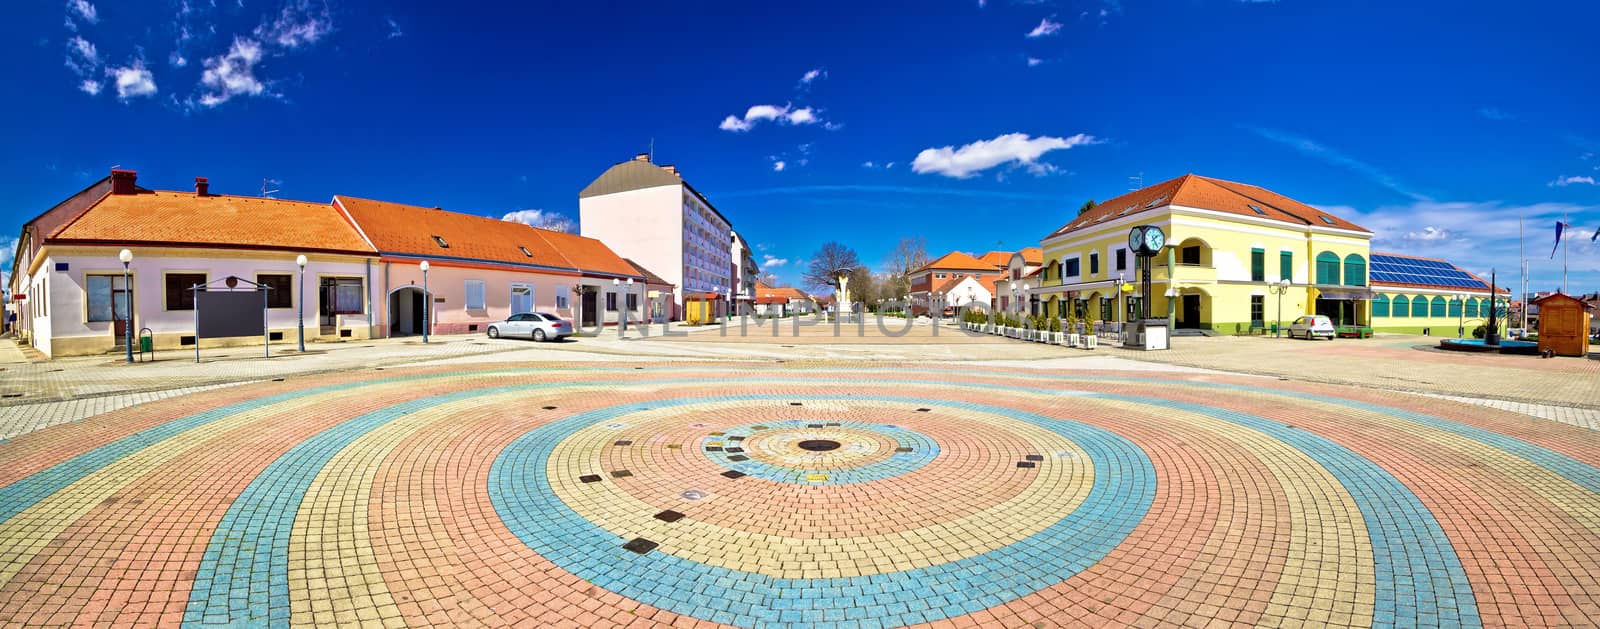 Town of Ludbreg square panoramic view, Prigorje, Croatia